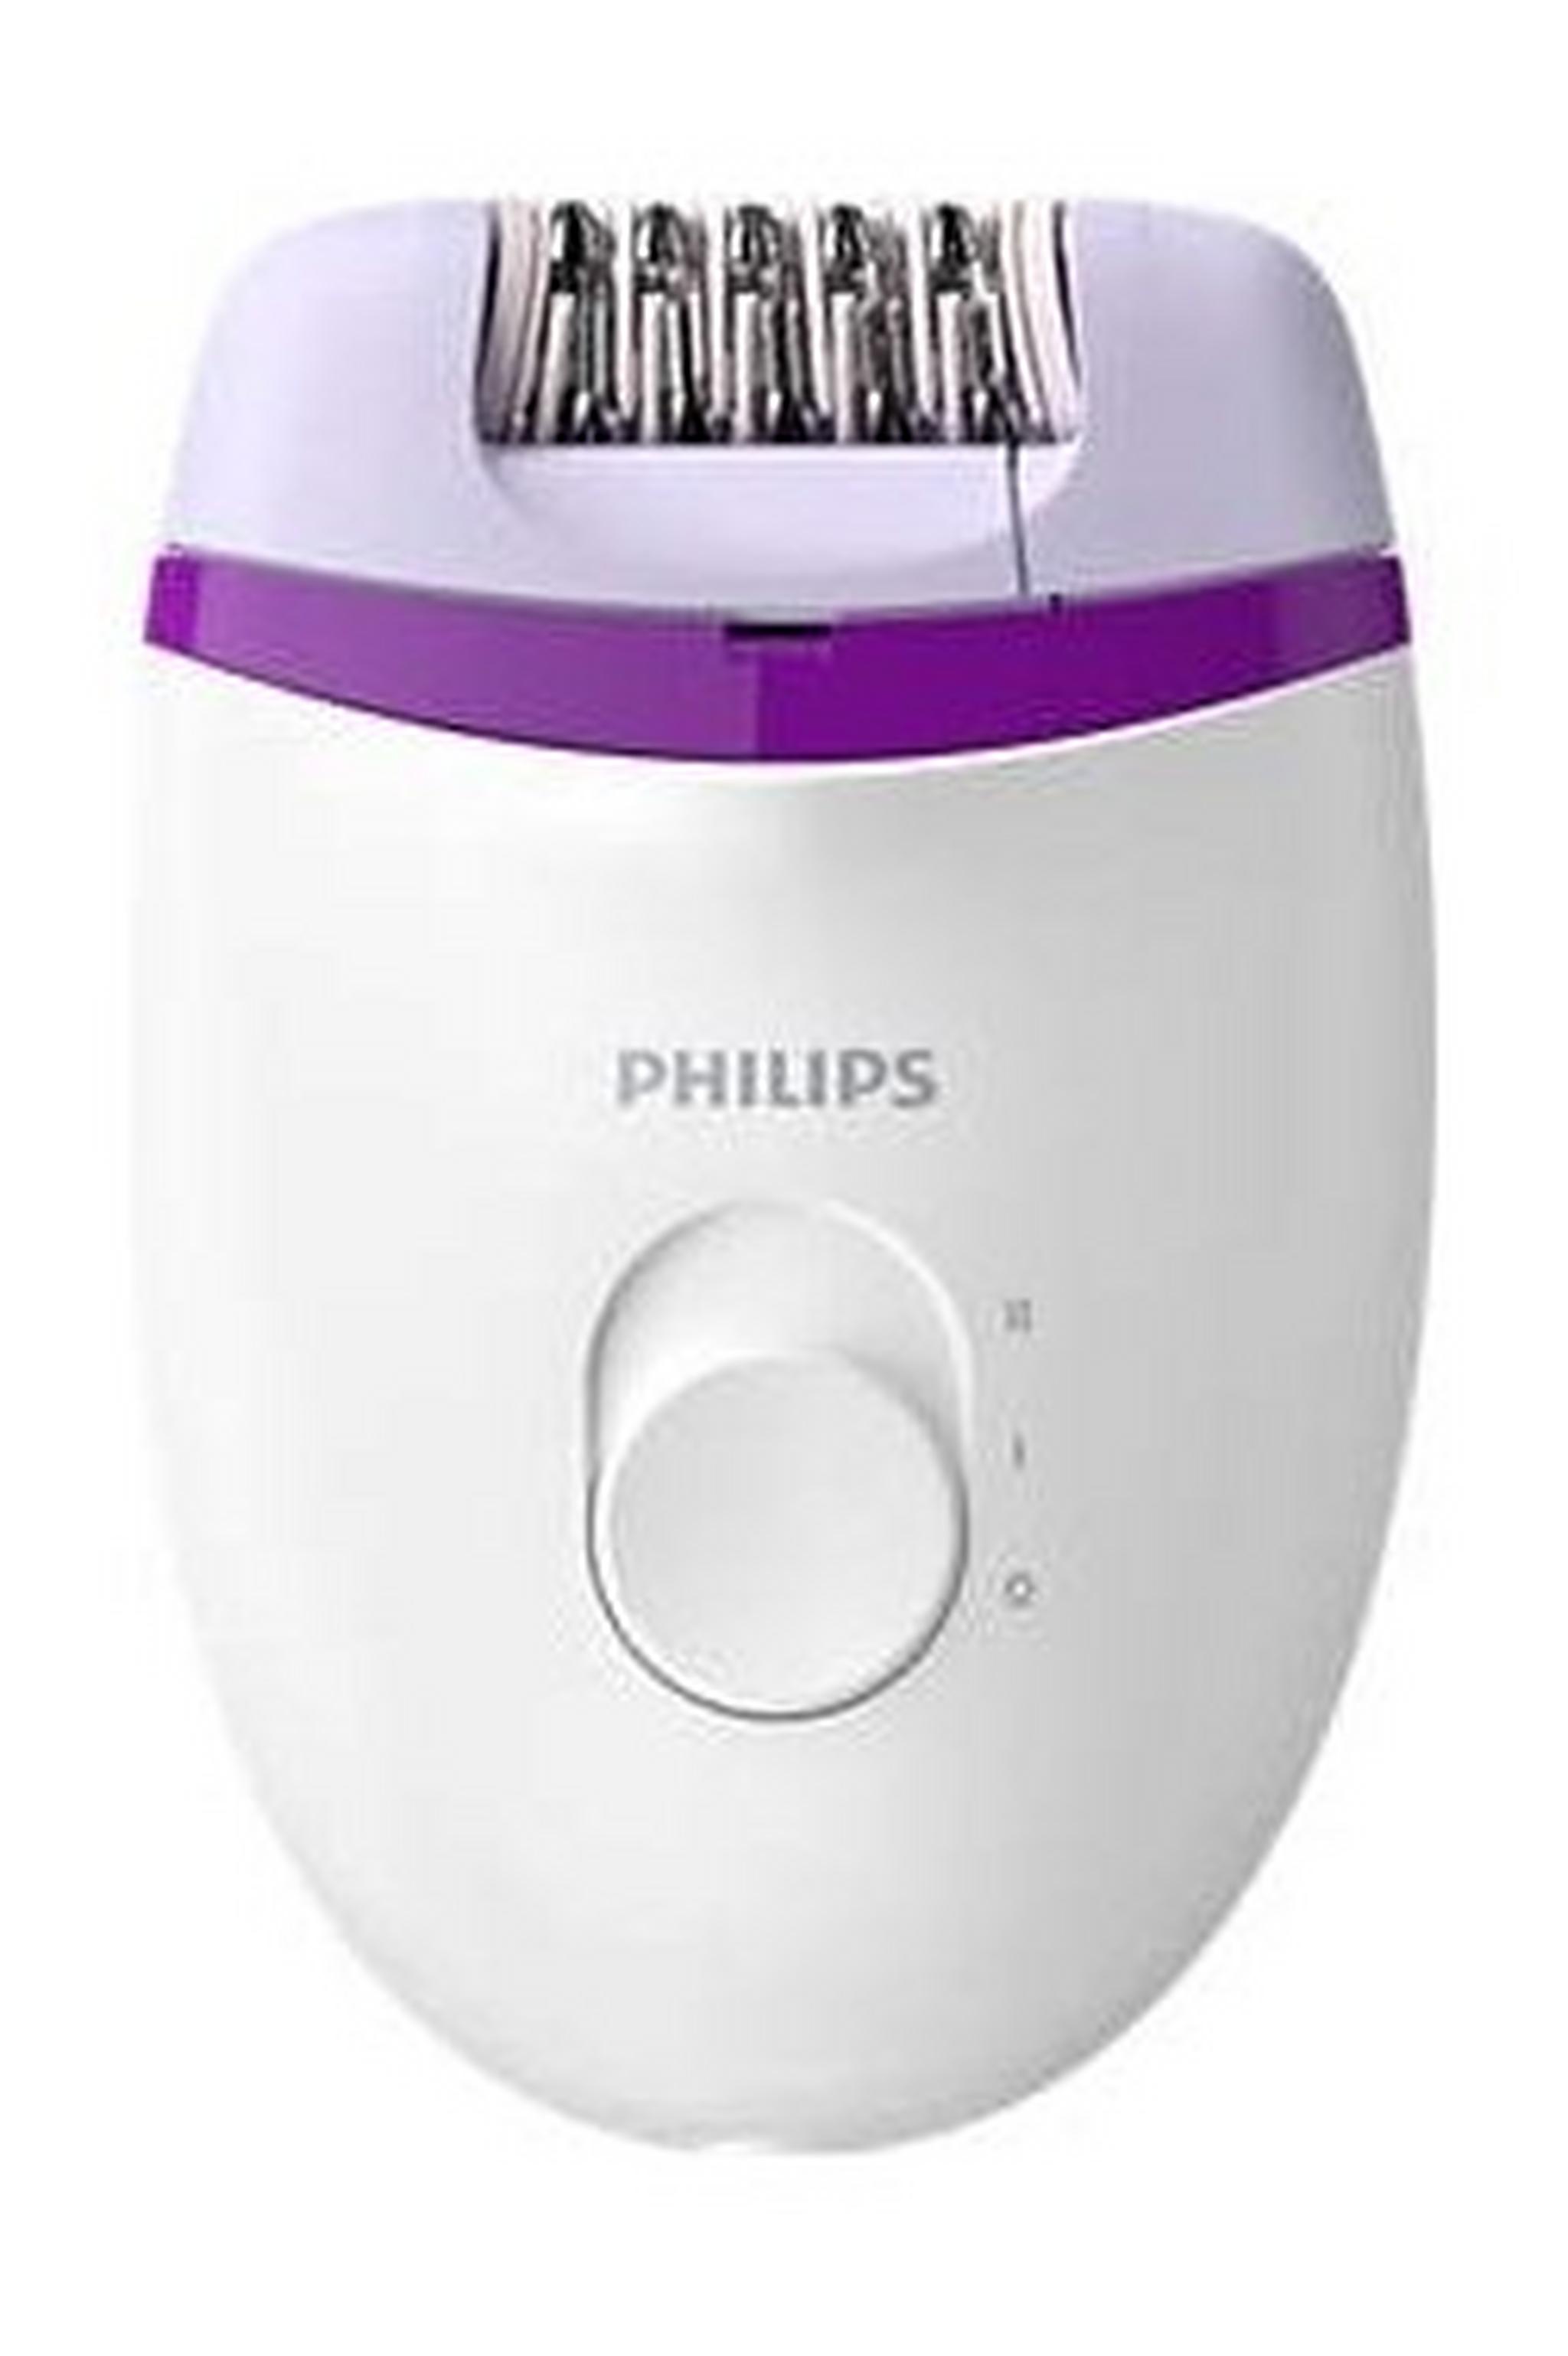 ماكينة إزالة الشعر السلكية فيليبس، حجم مدمج لحلاقة سهلة وناعمة لأسابيع، BRE225/01 - أبيض/بنفسجي